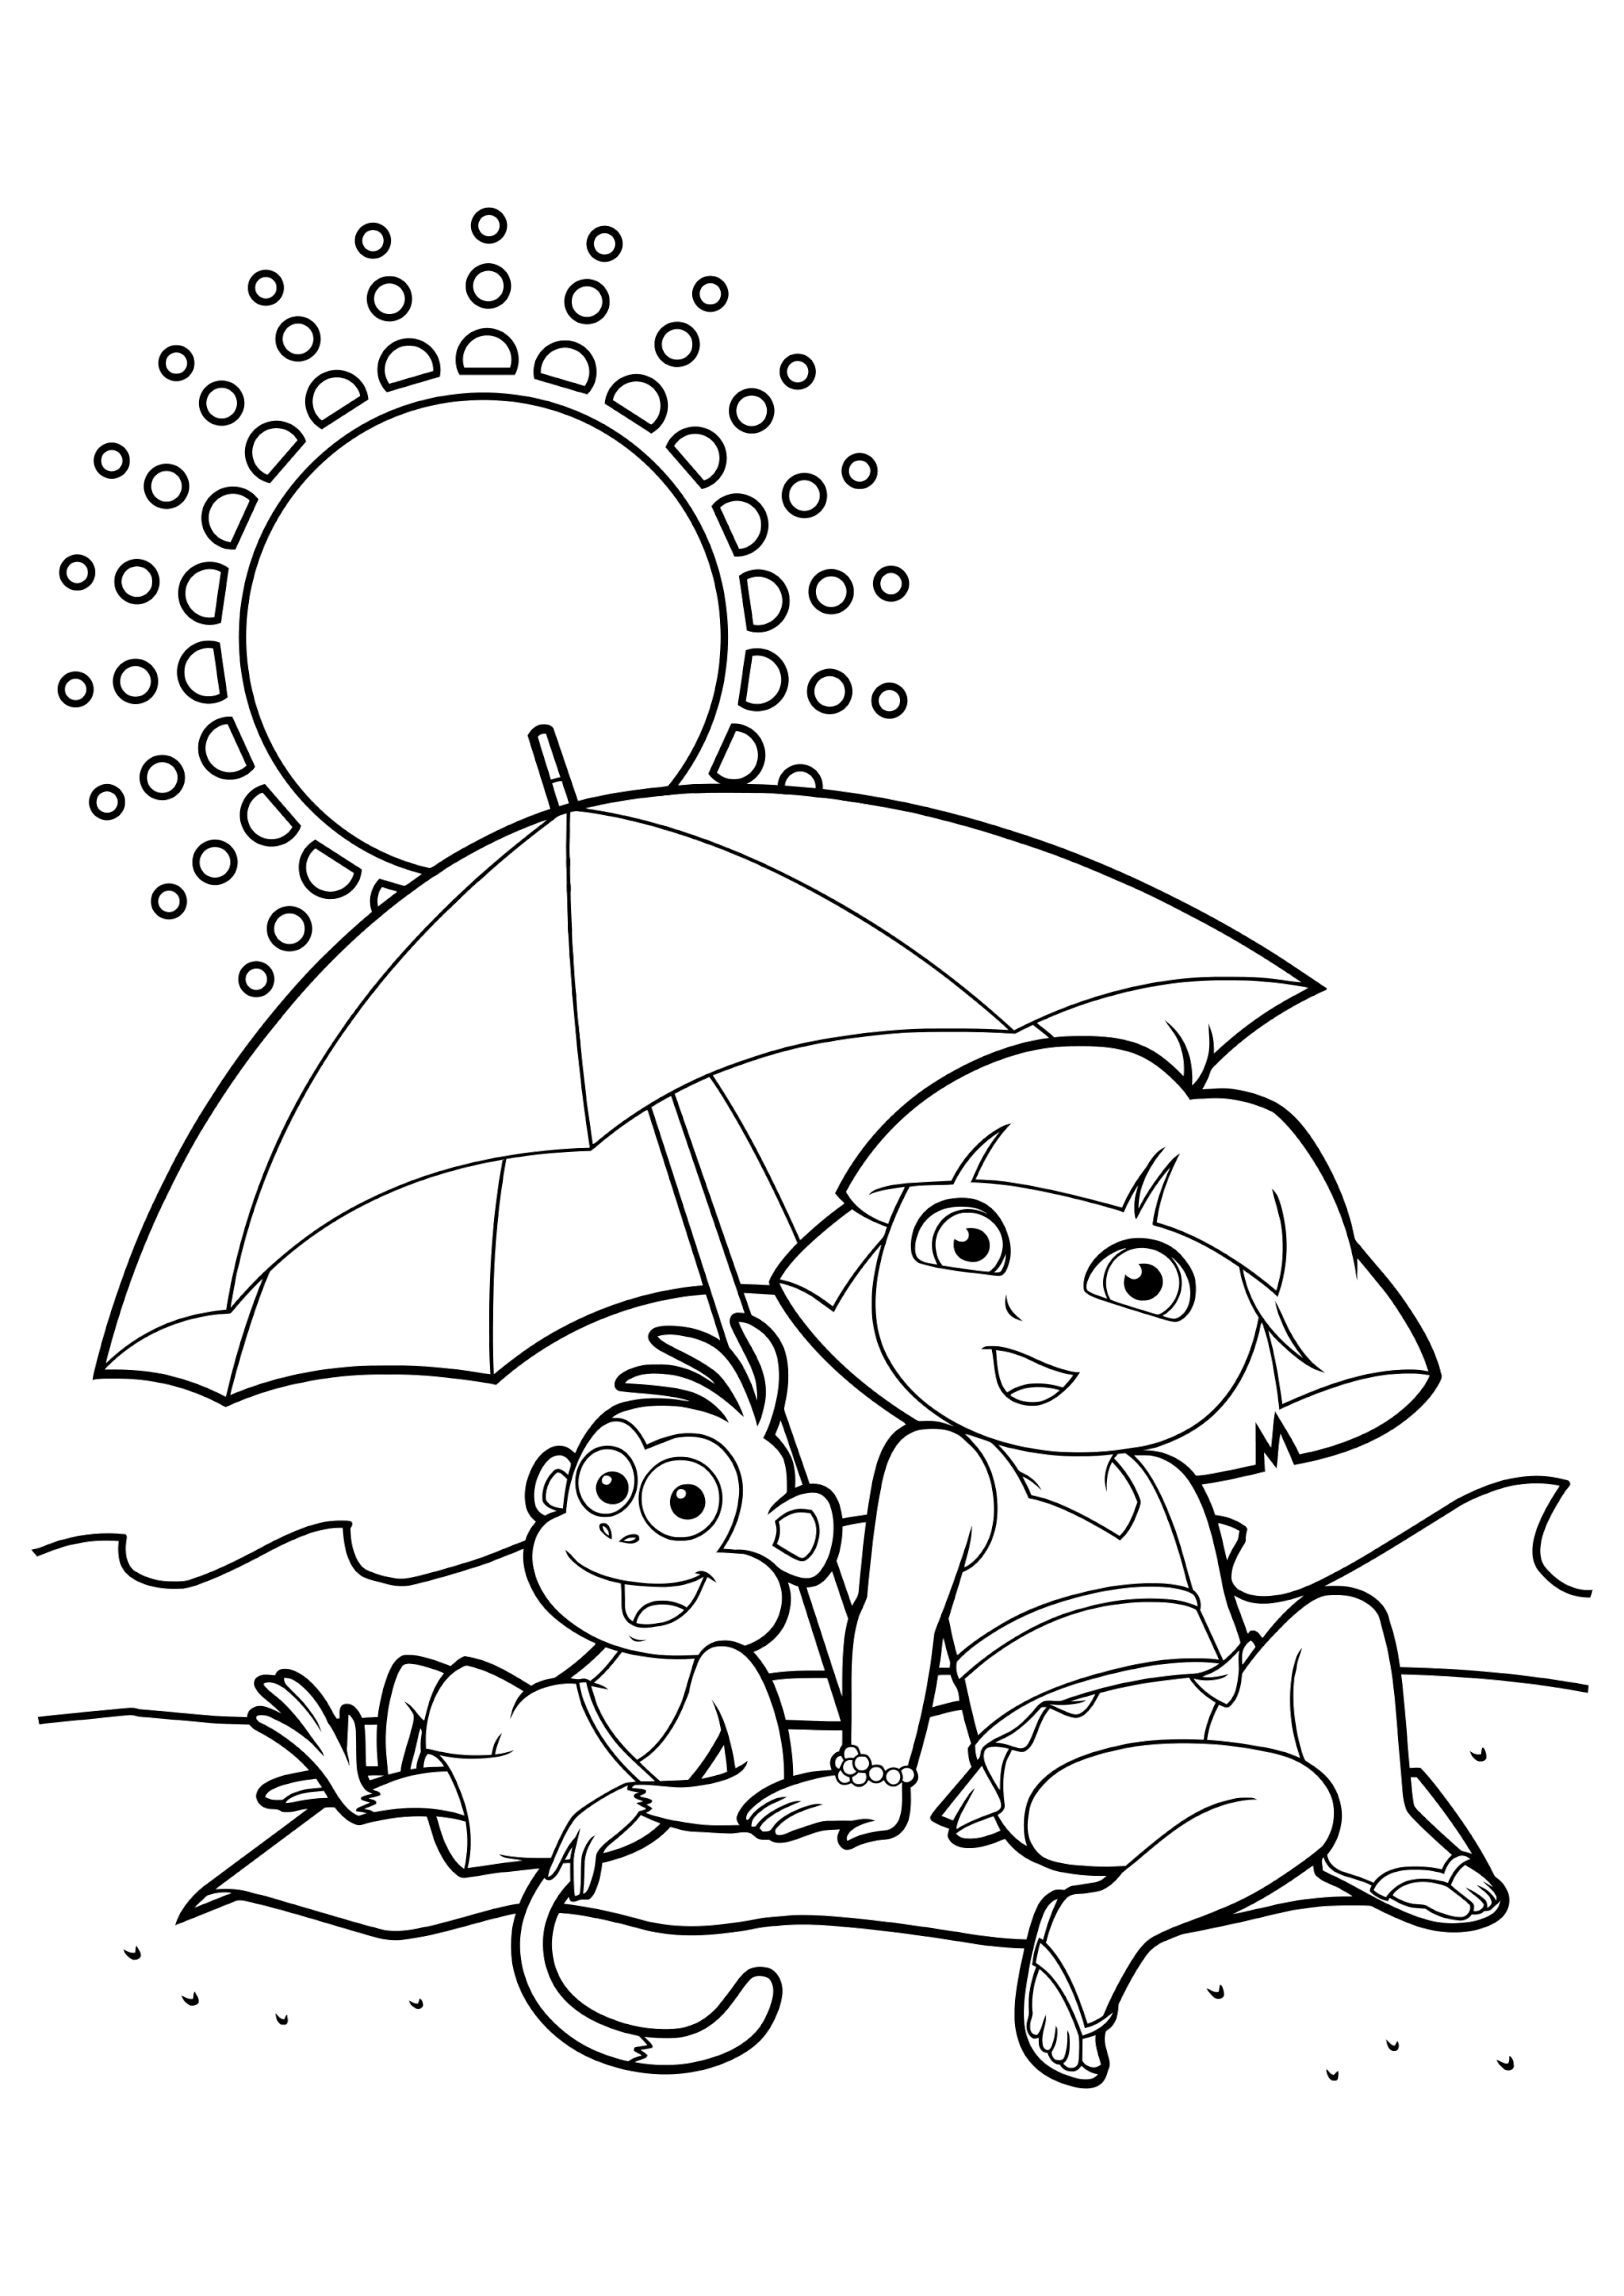 Раскраска Даша с другом Башмачком под зонтом